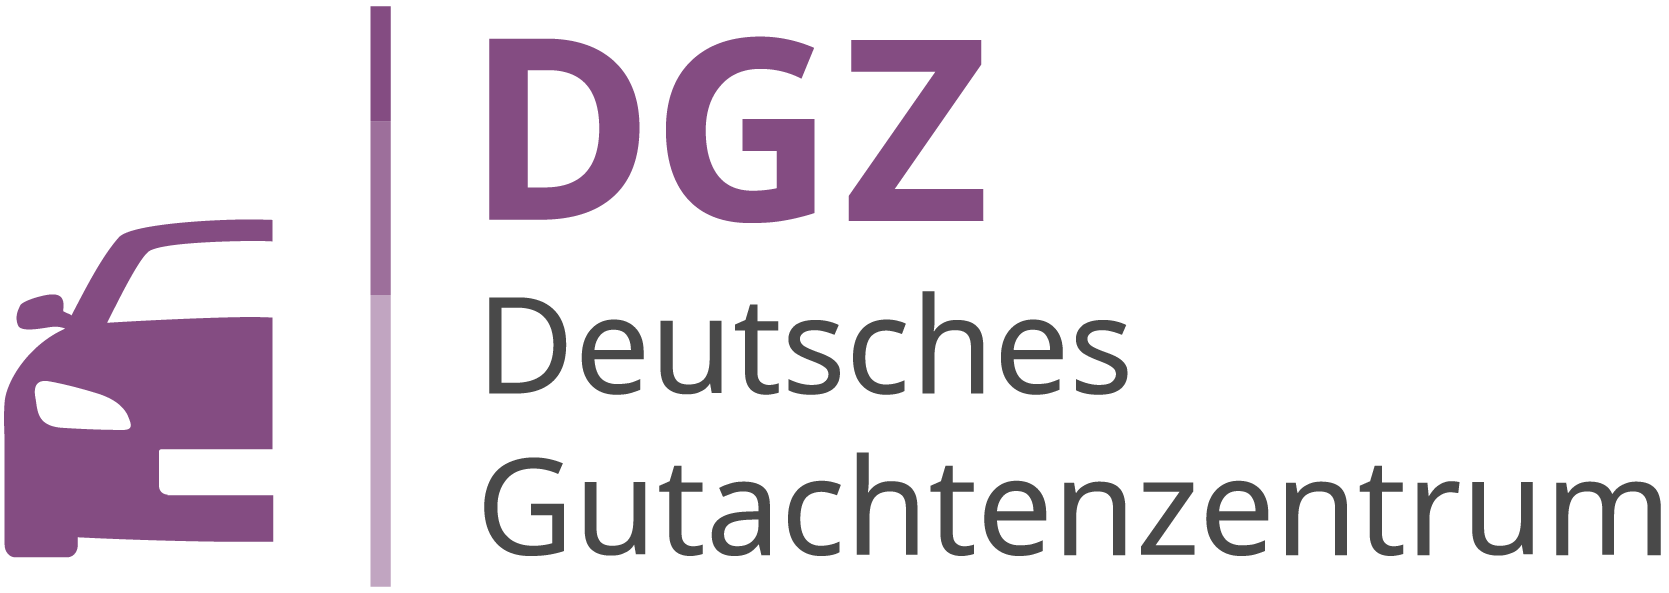 DGZ Deutsches Gutachtenzentrum - Logo